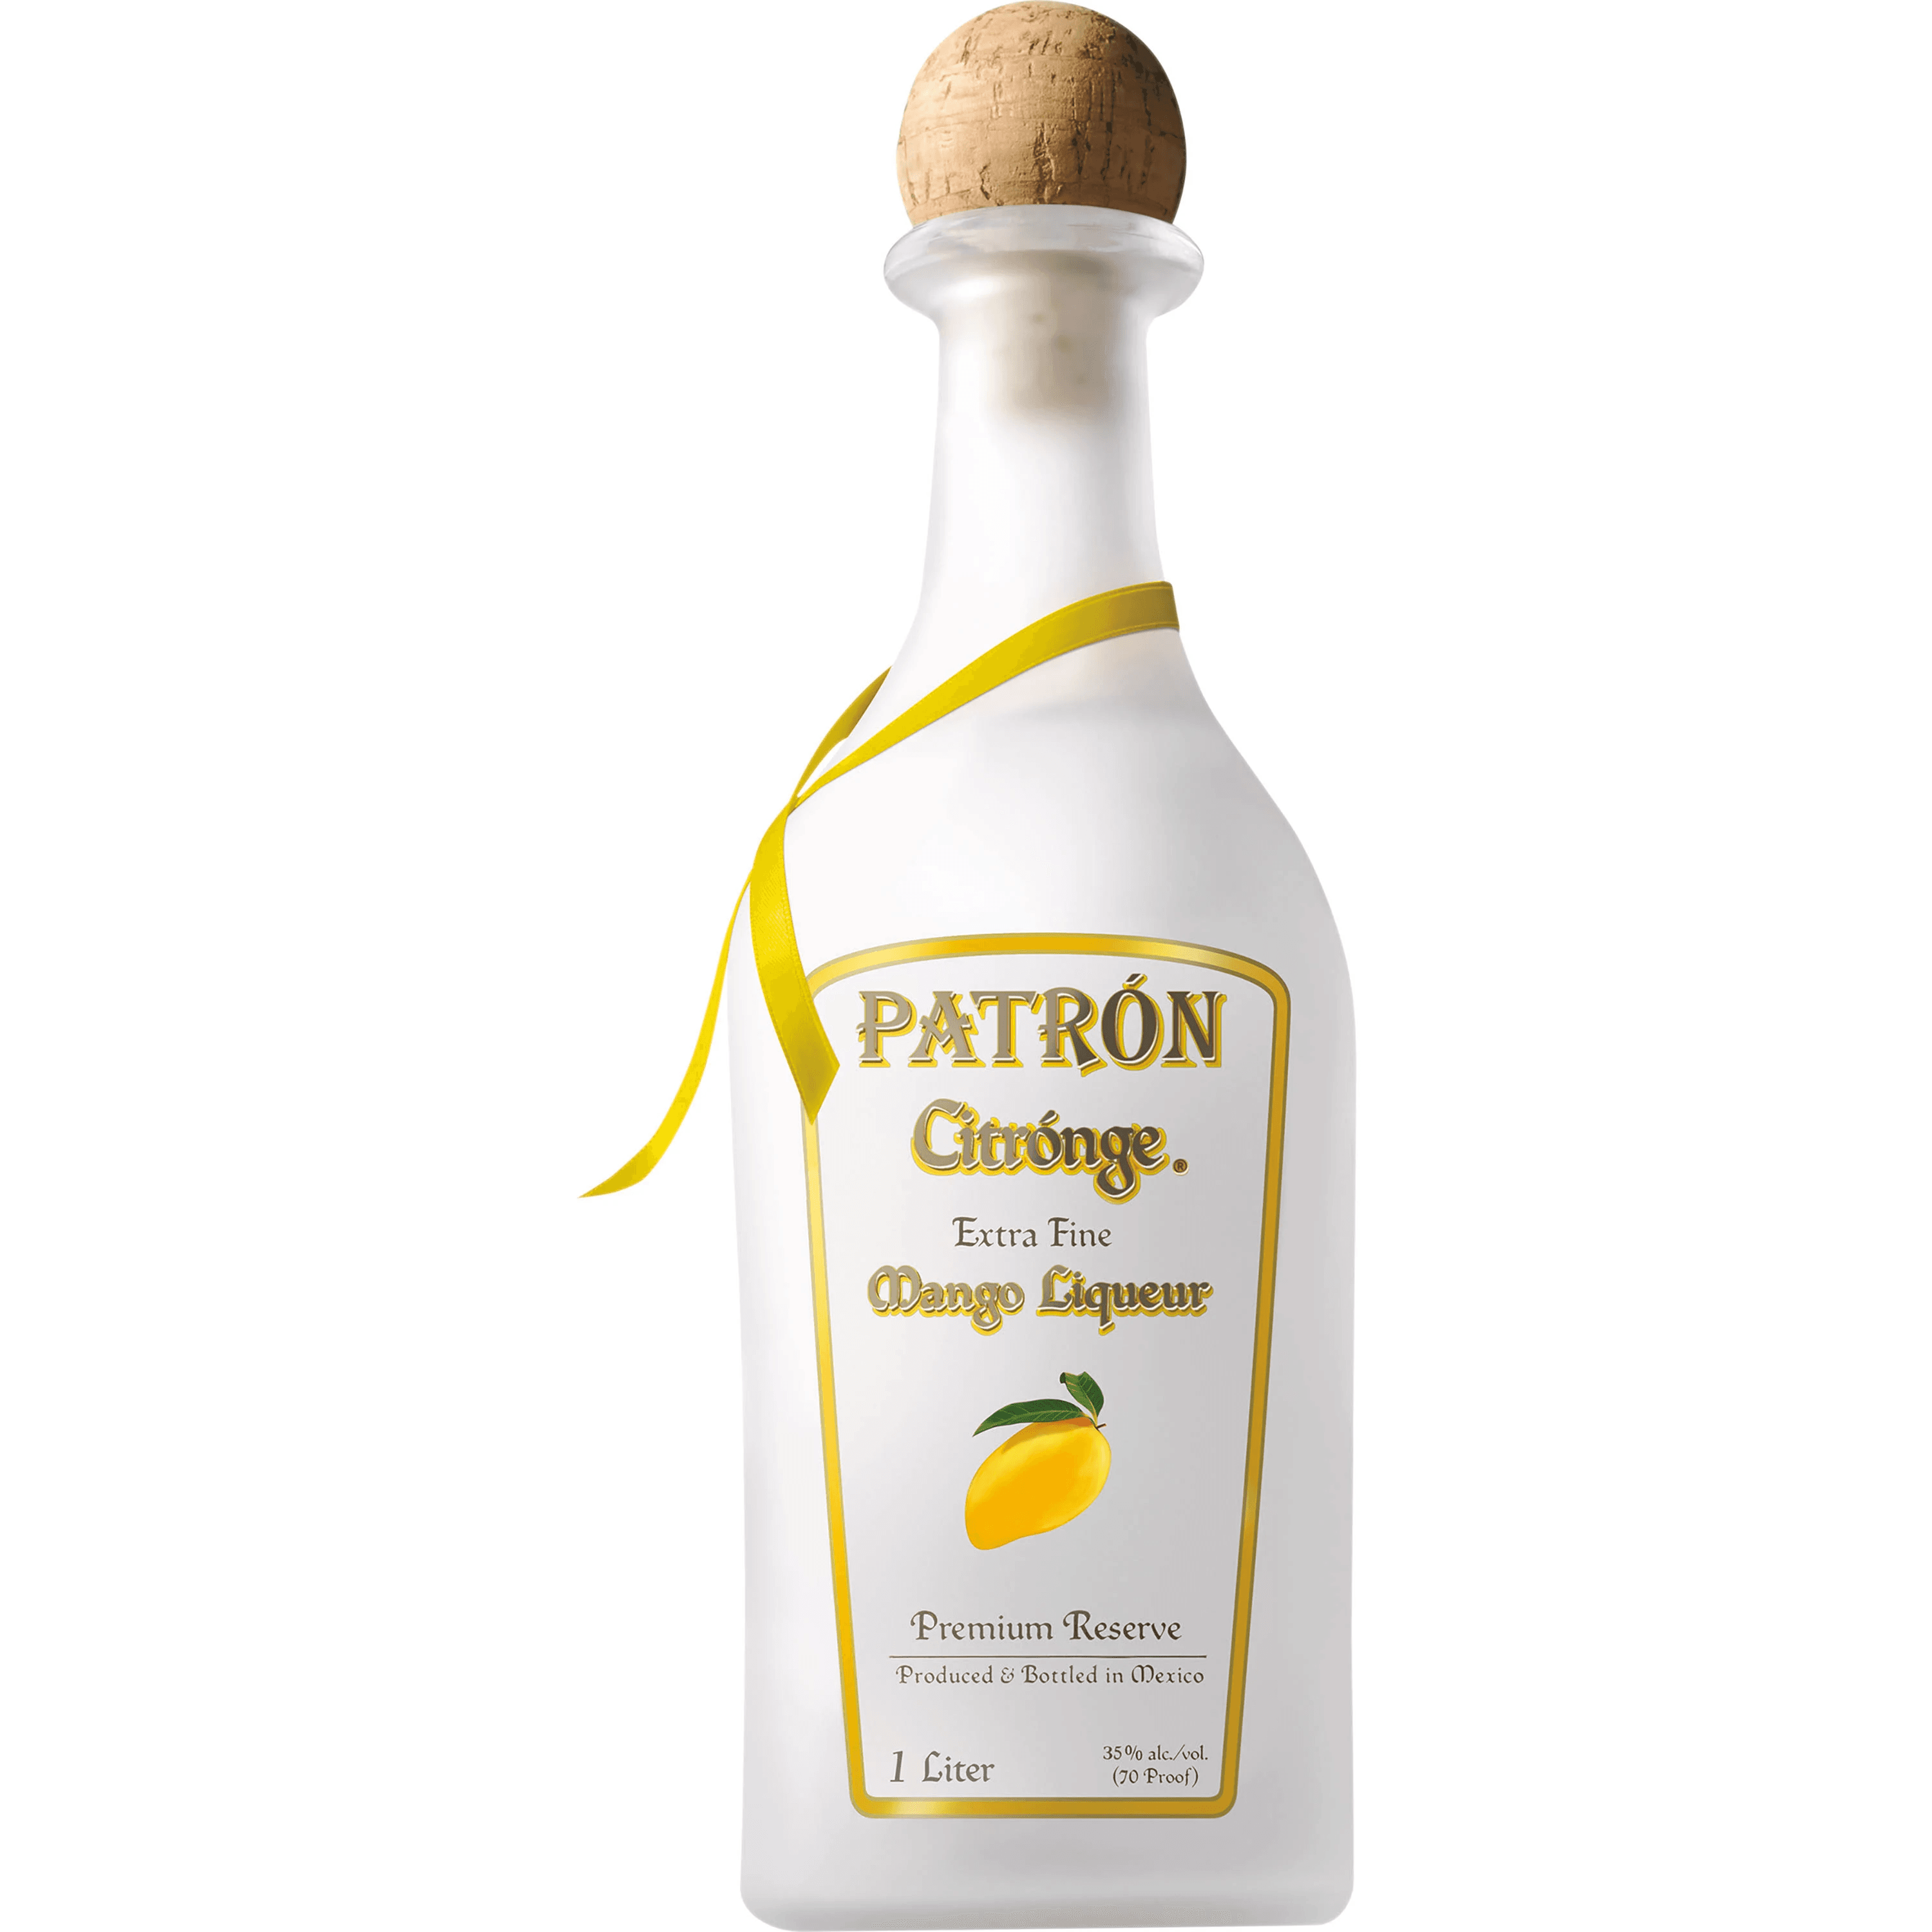 PATRÓN® Citrónge Mango